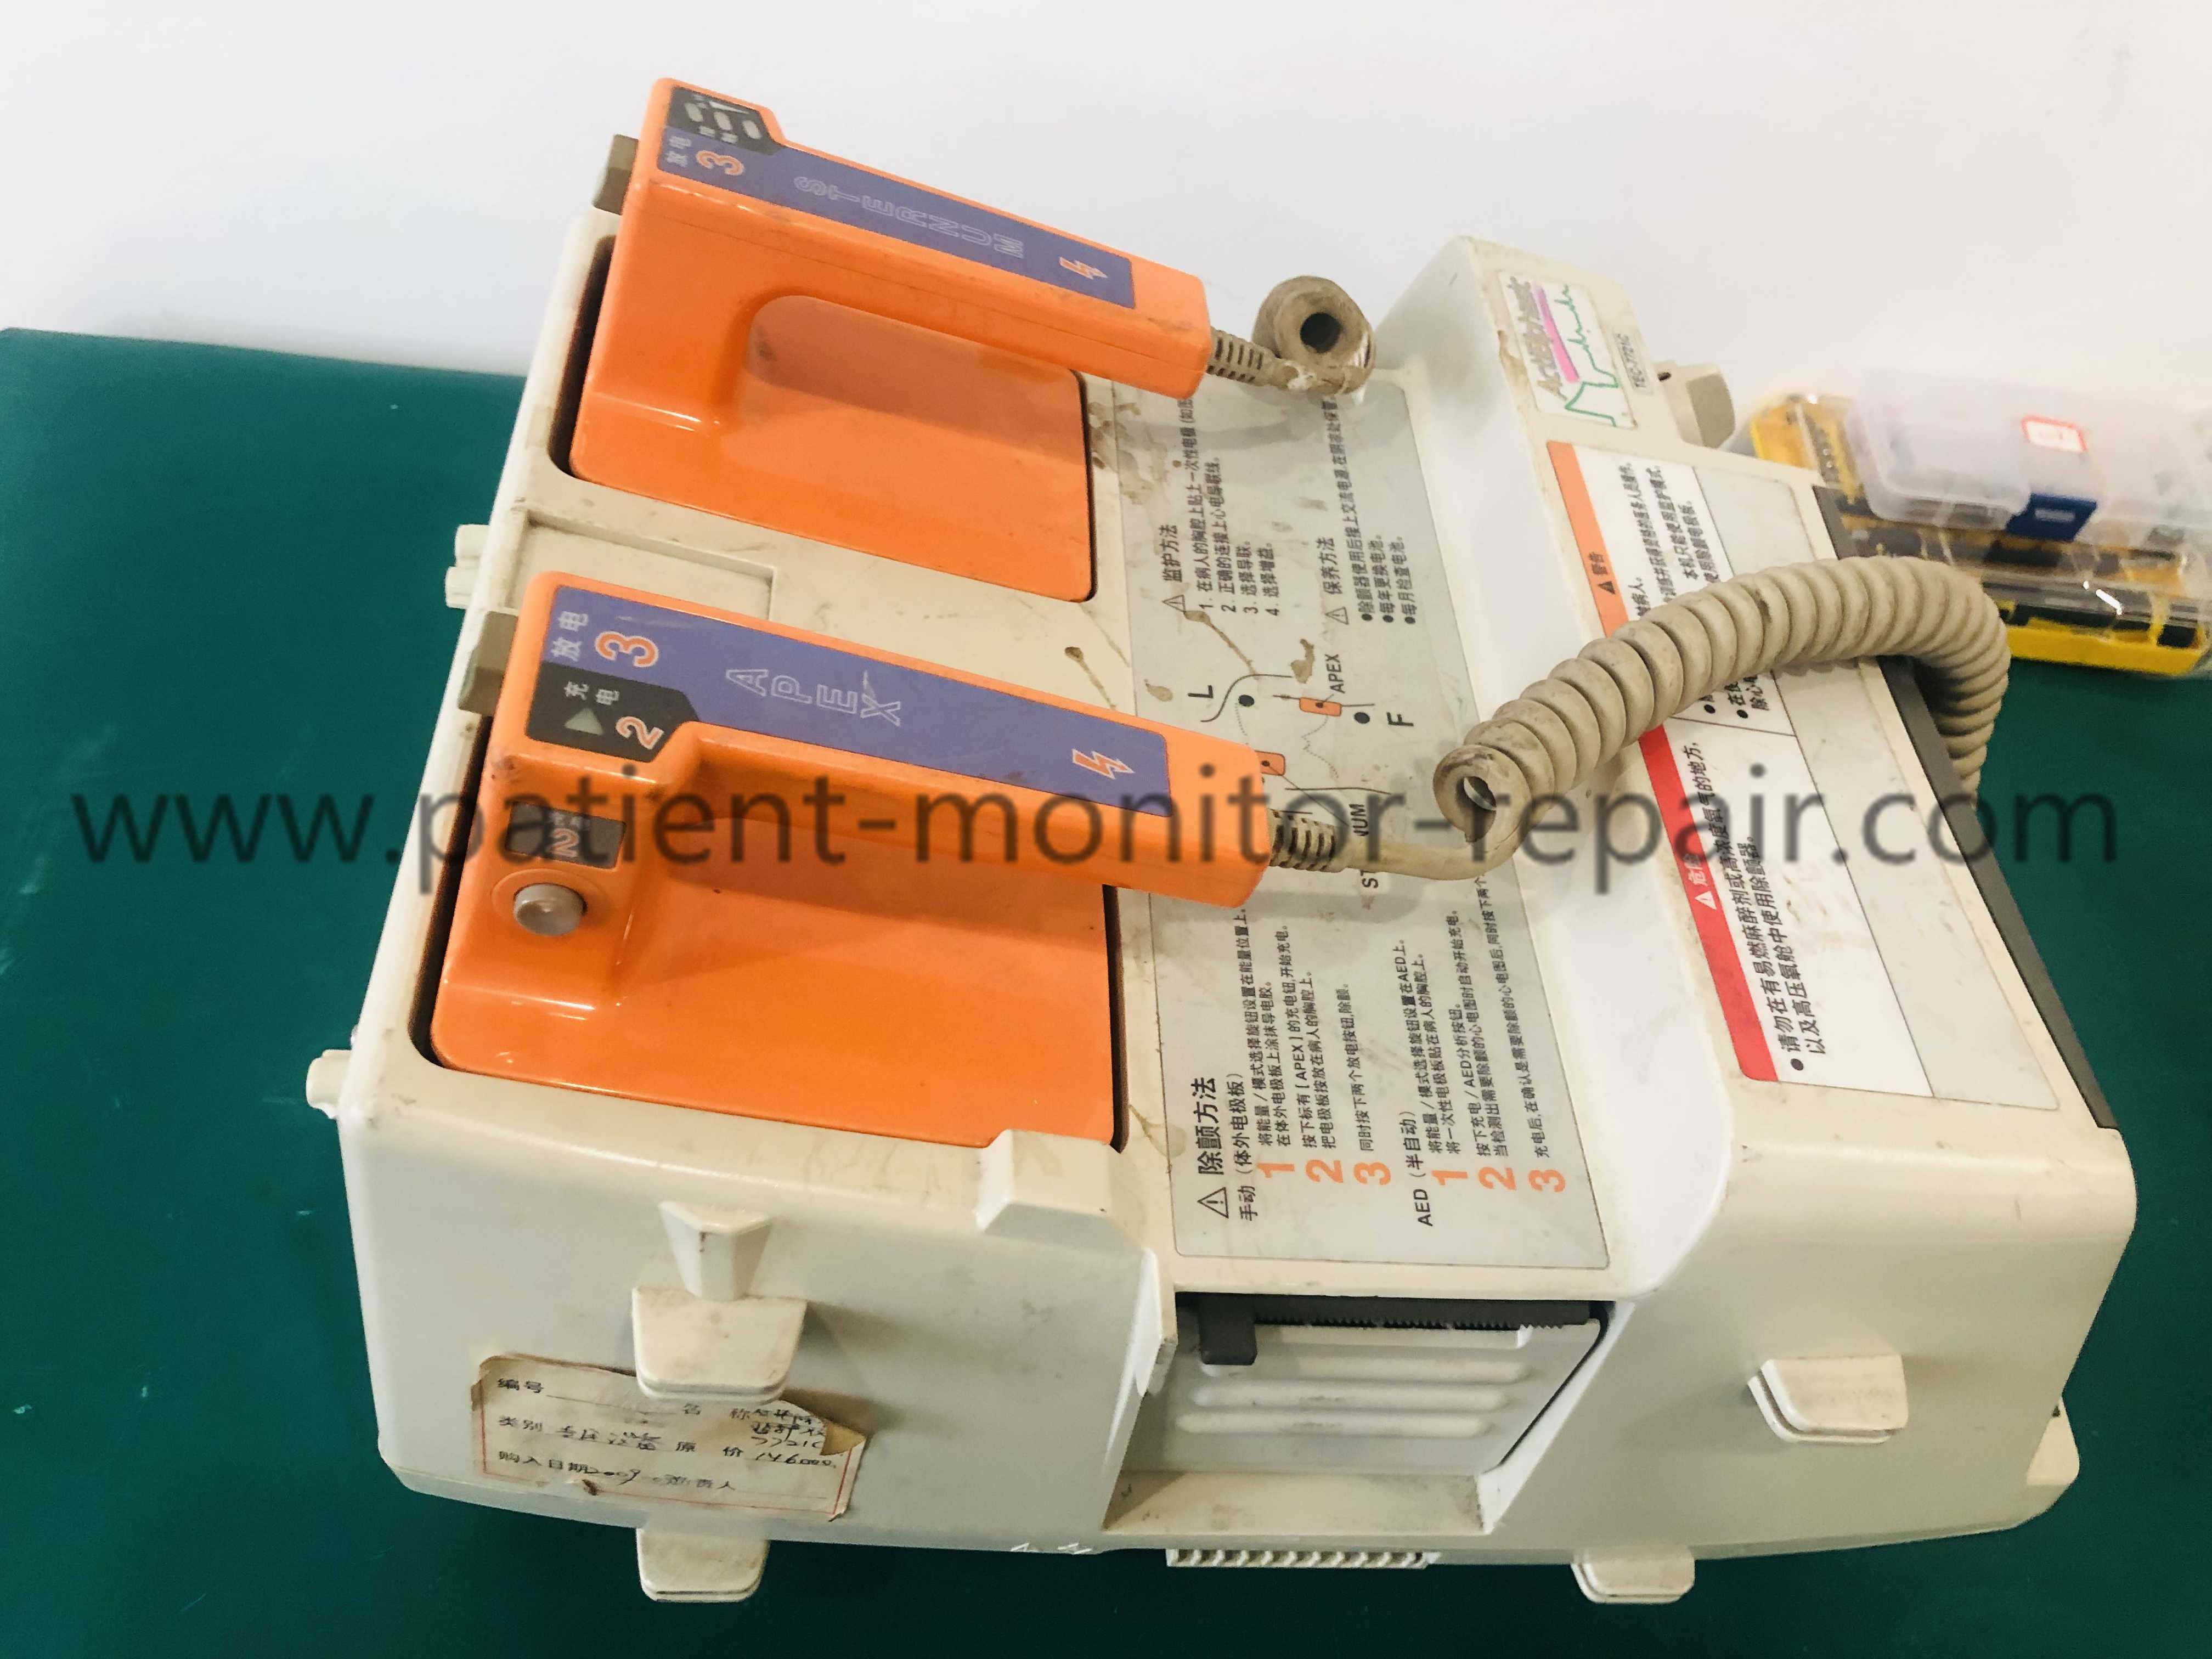 Nihon kohden TEC-7721C defibrillator (10).jpg